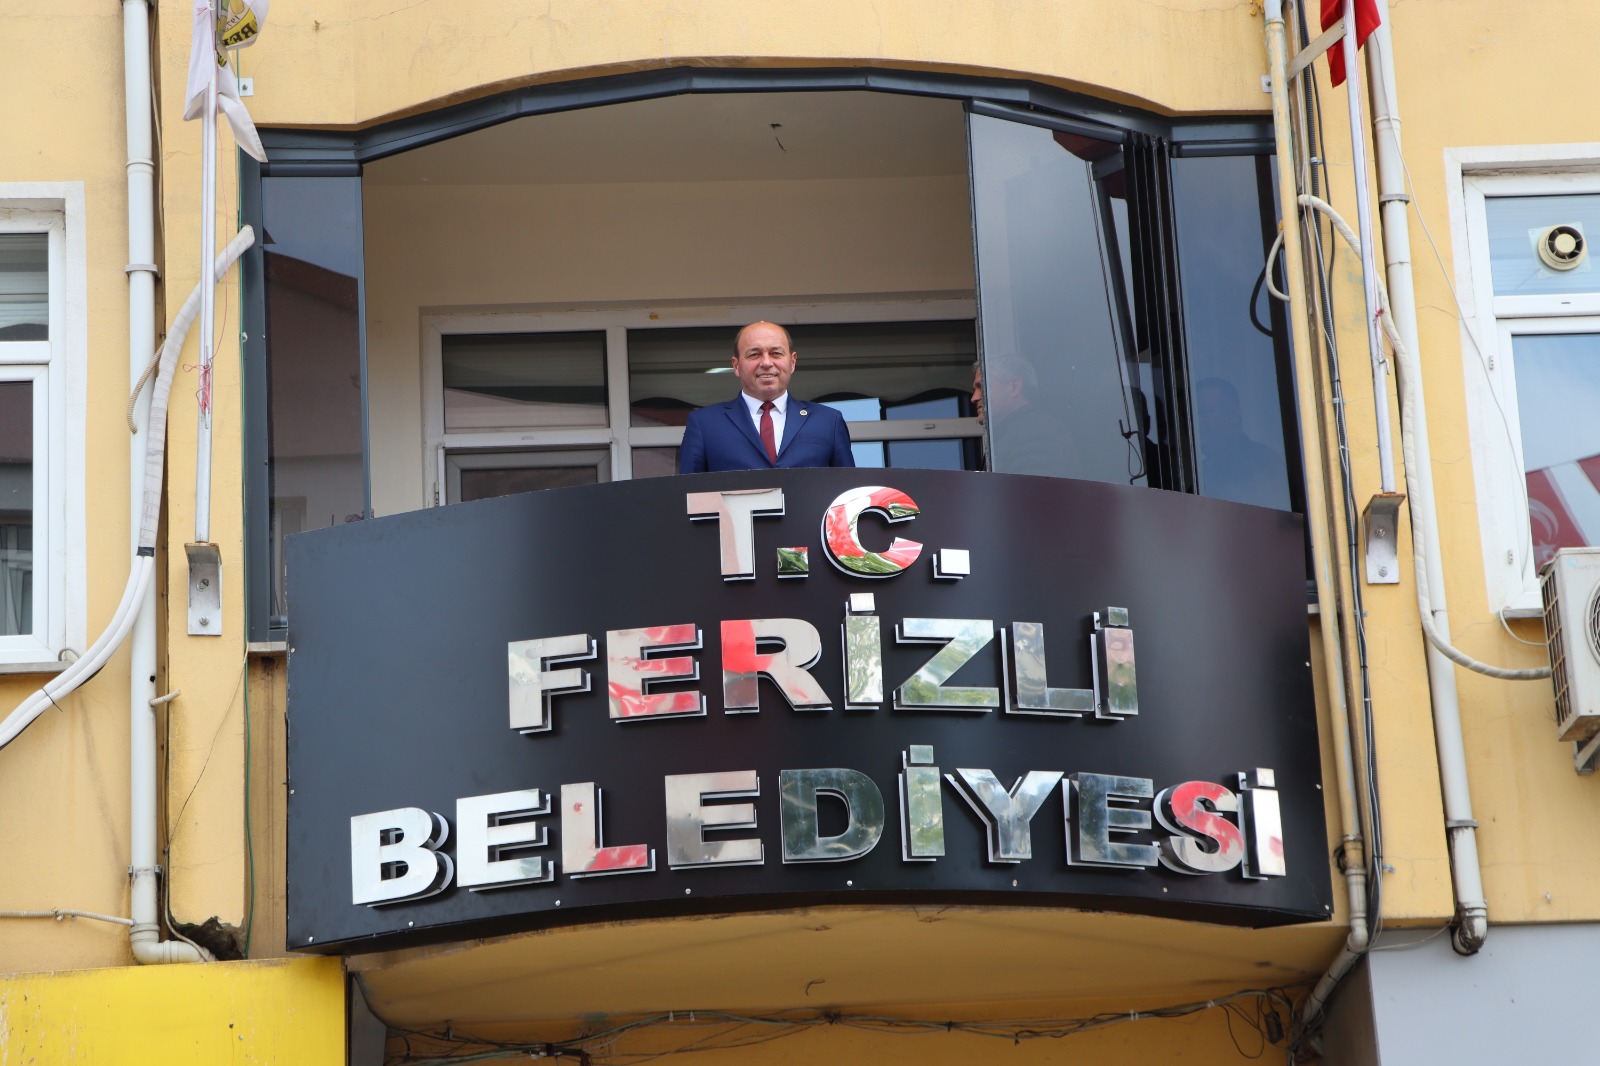 Ferizli Belediyesine T.C. eklendi